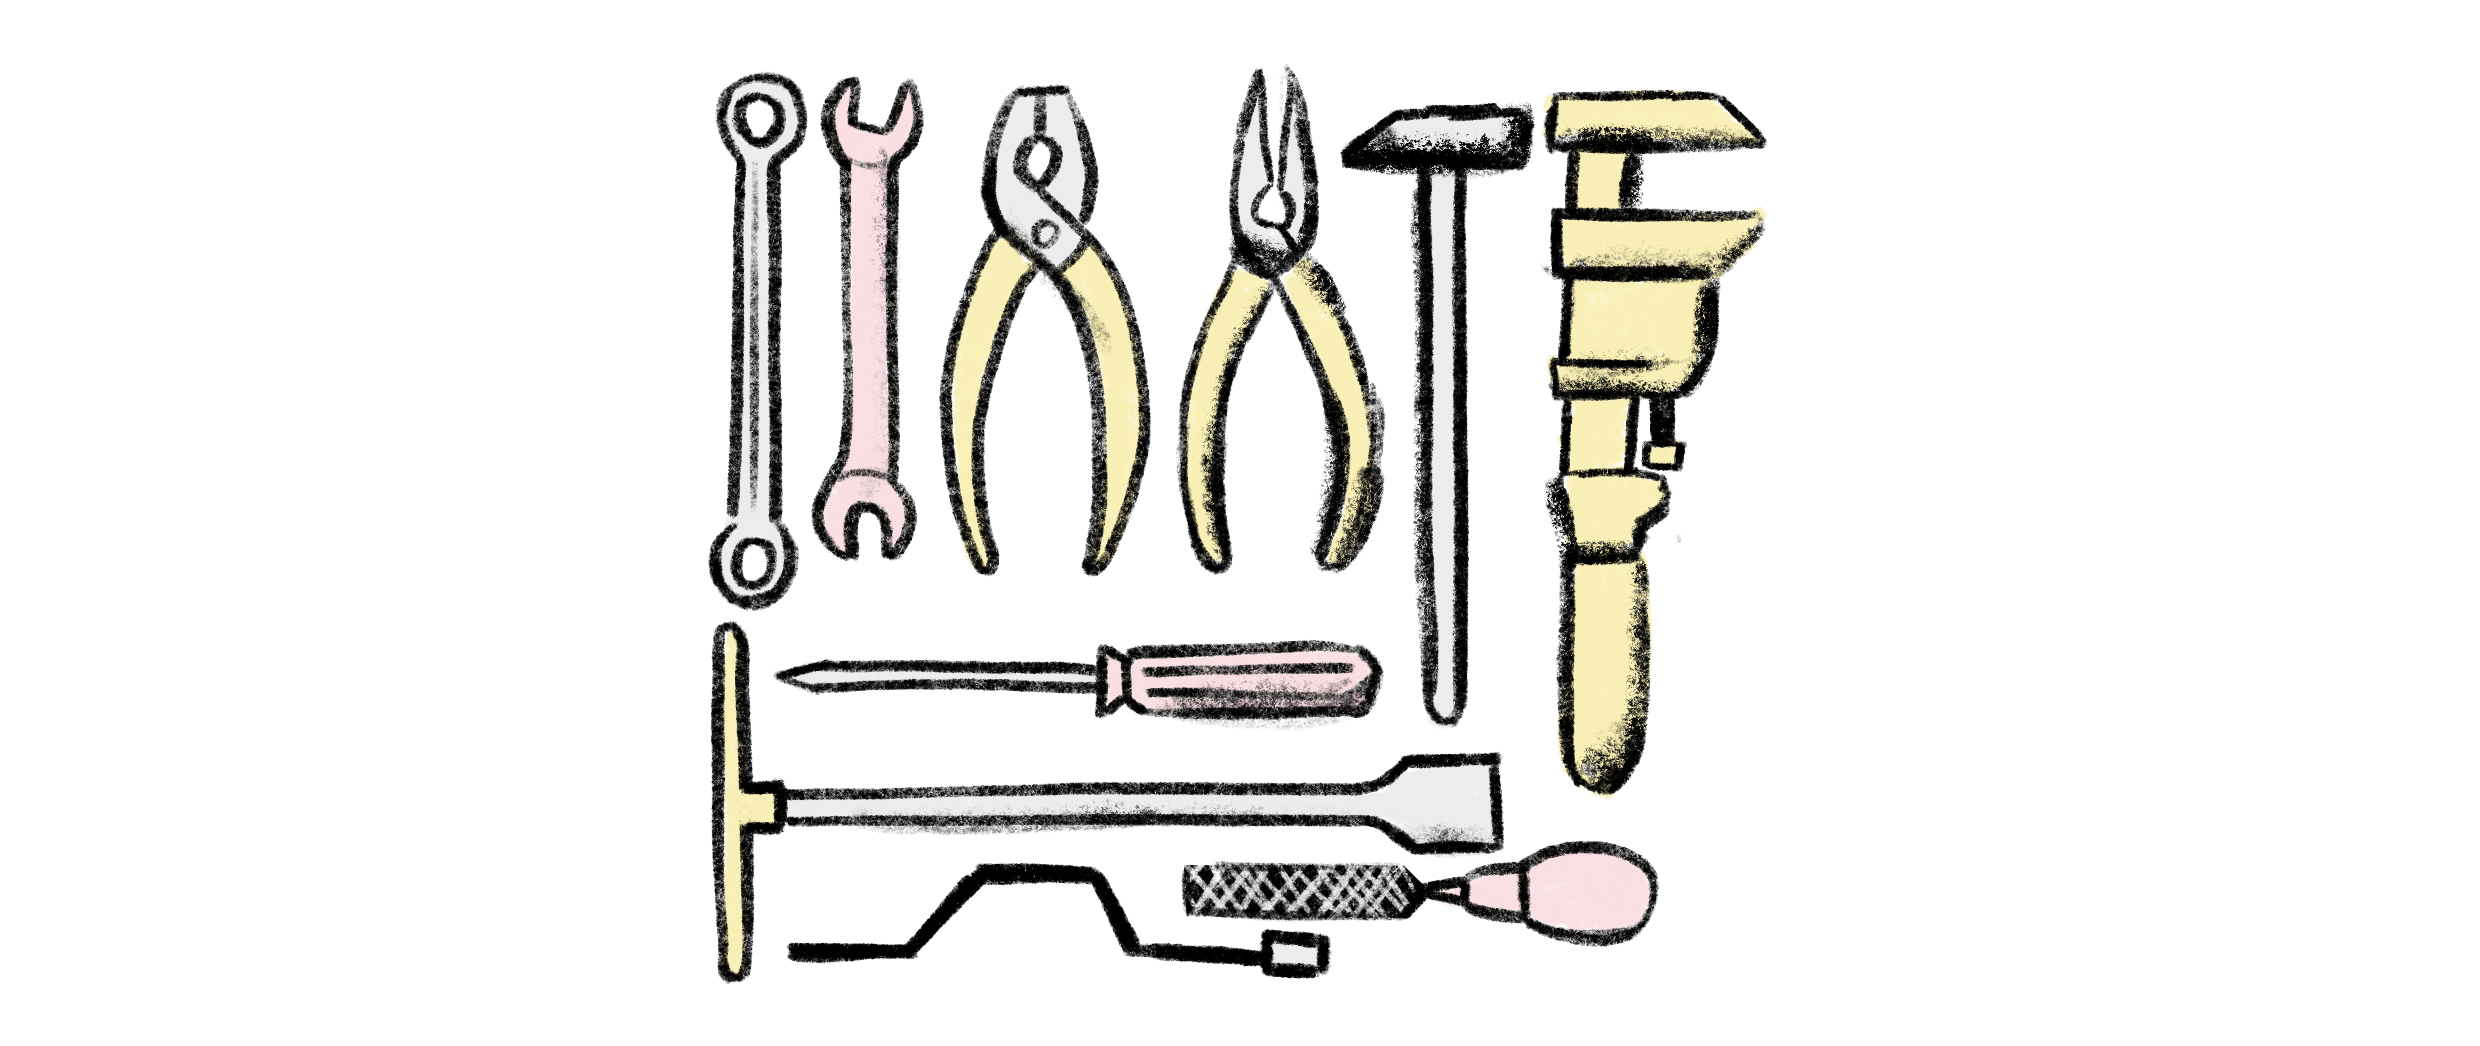 A mix of tools for mechanics